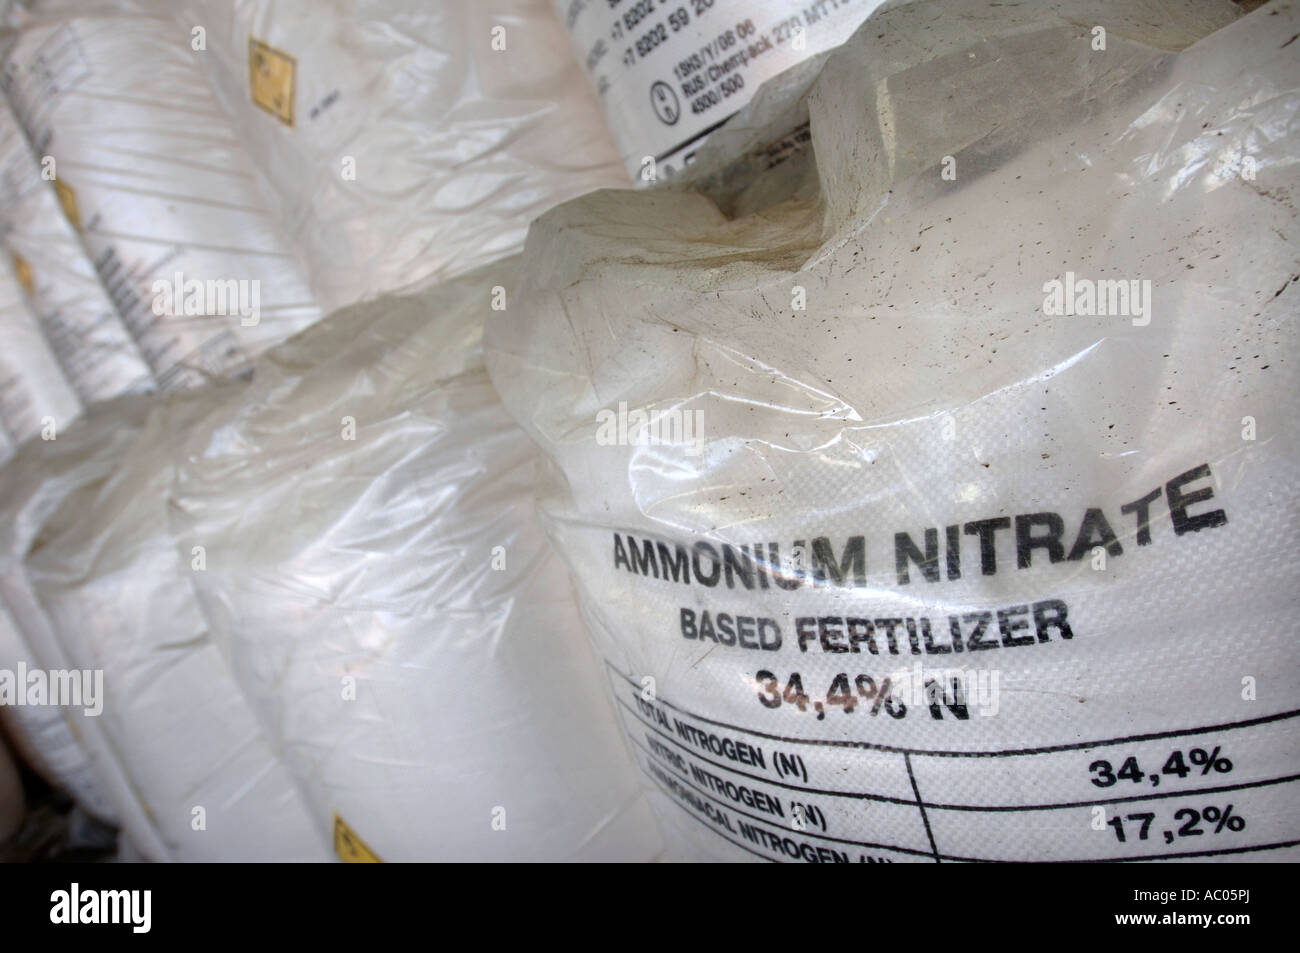 Una dimensione industriale borsa di nitrato di ammonio di concime agricolo che può essere utilizzato in ordigni esplosivi rudimentali REGNO UNITO Foto Stock